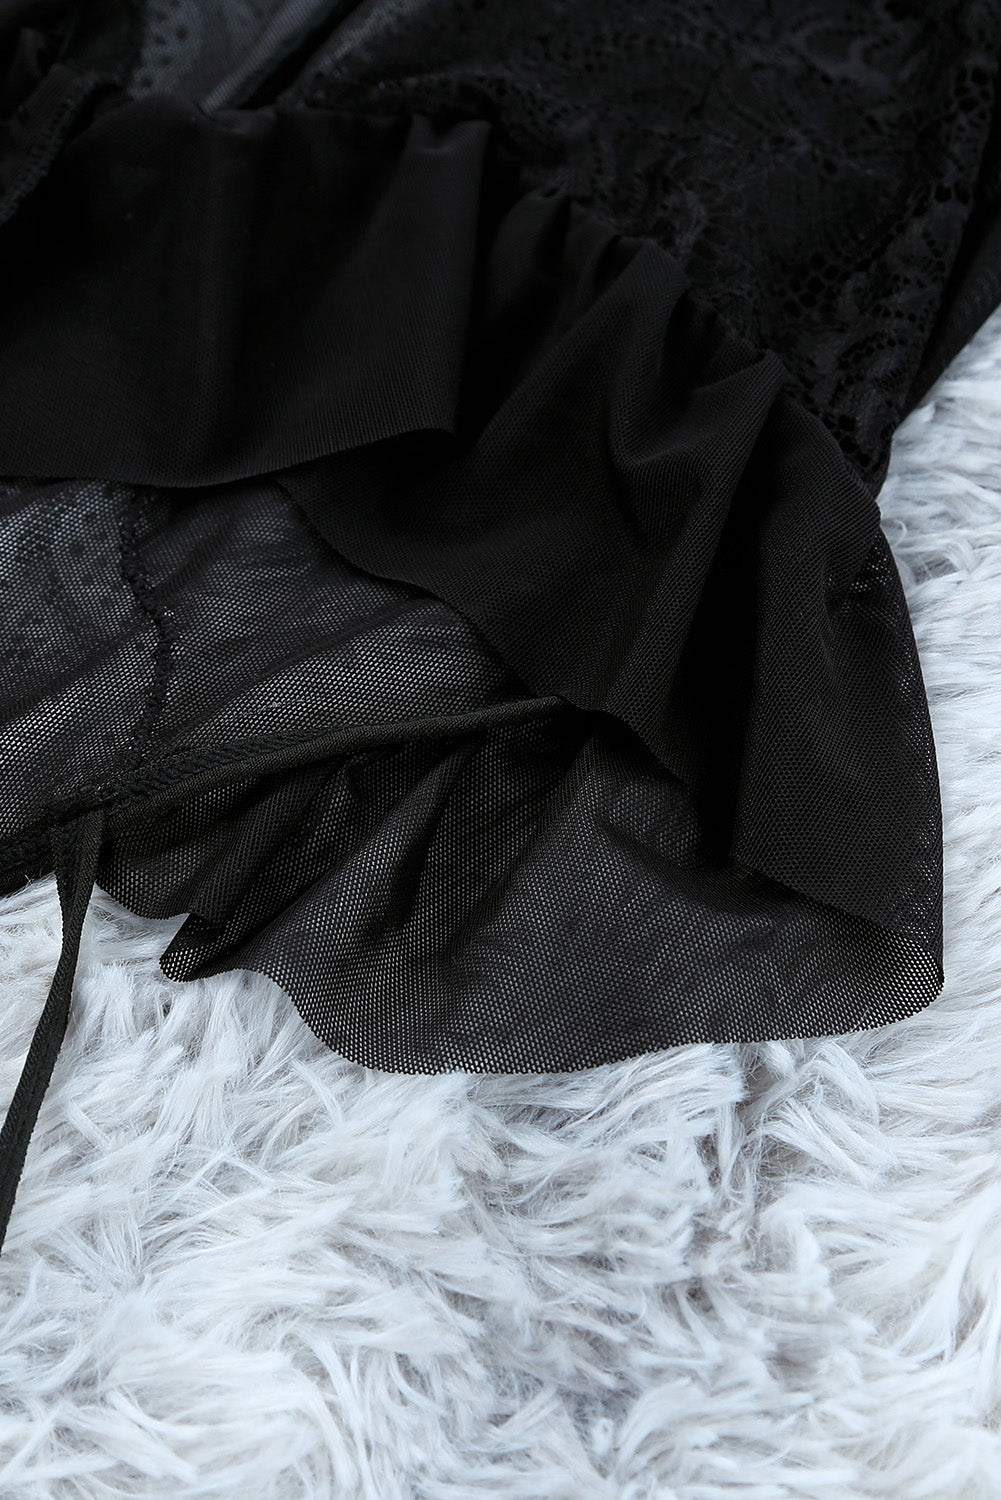 Black Lace Mesh Contrast Lace-up Straps Teddy Lingerie Teddy Lingerie JT's Designer Fashion